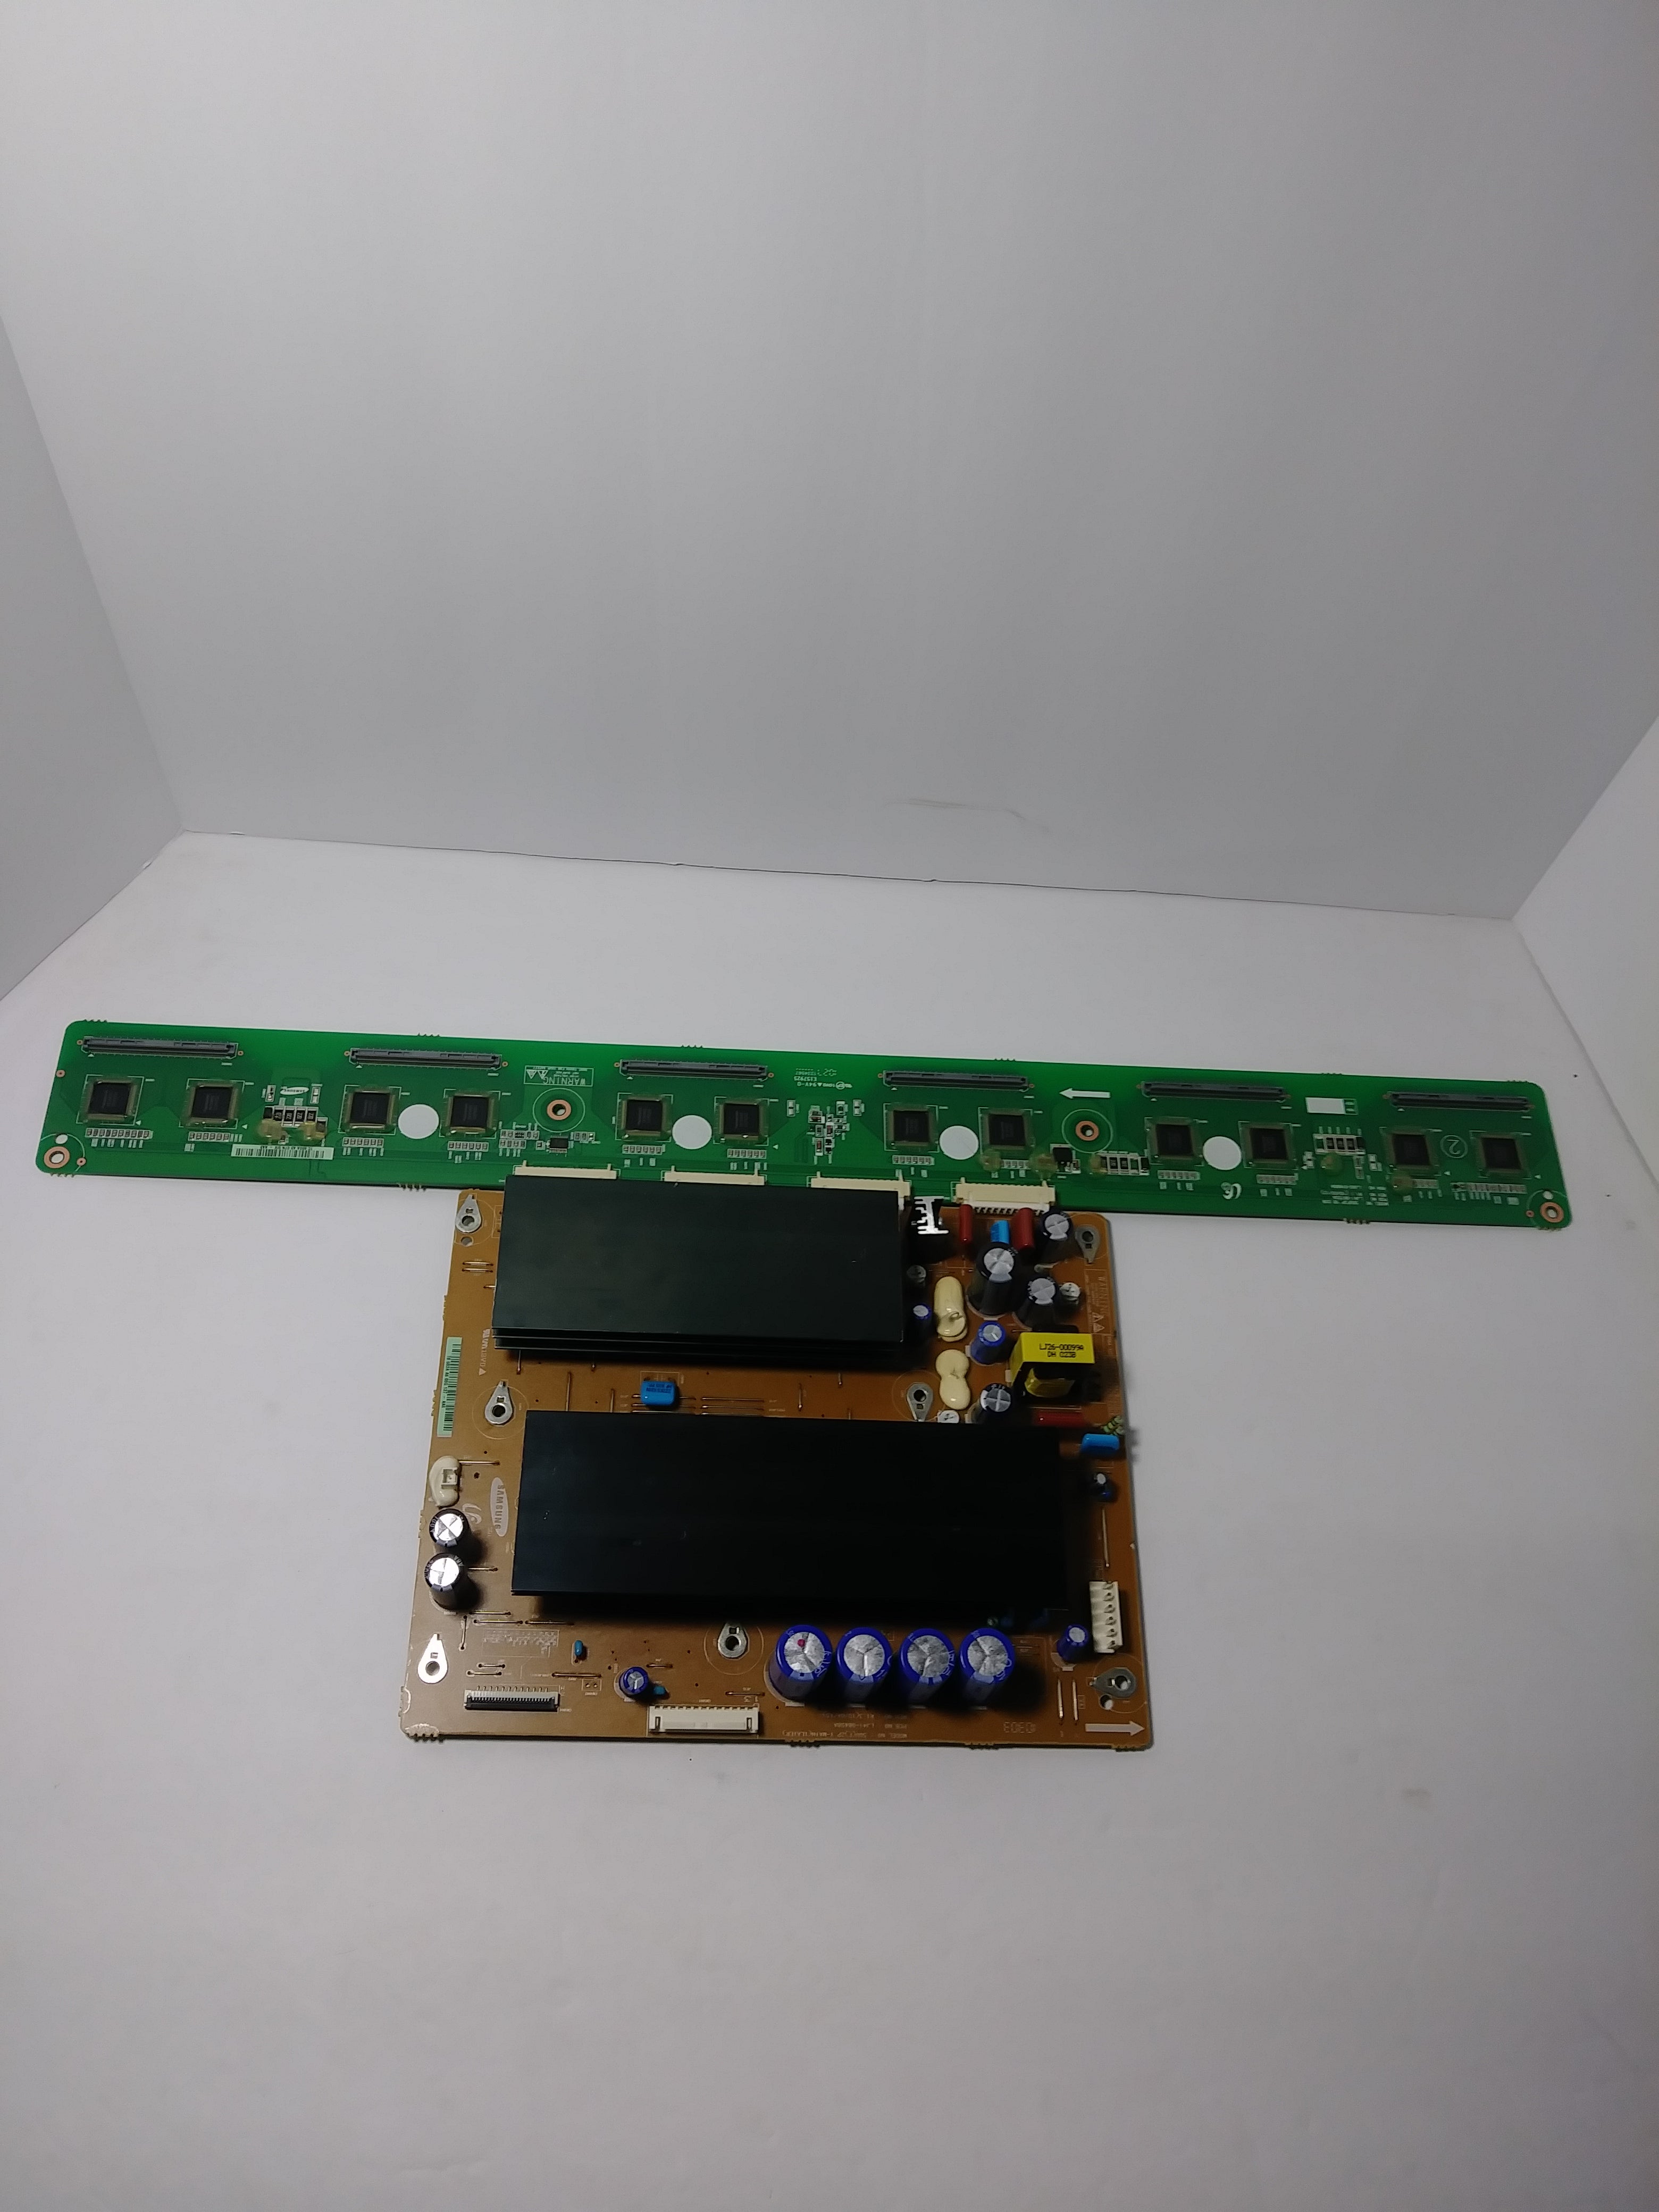 Samsung BN96-12411A (LJ92-01683A) Y-Main Board